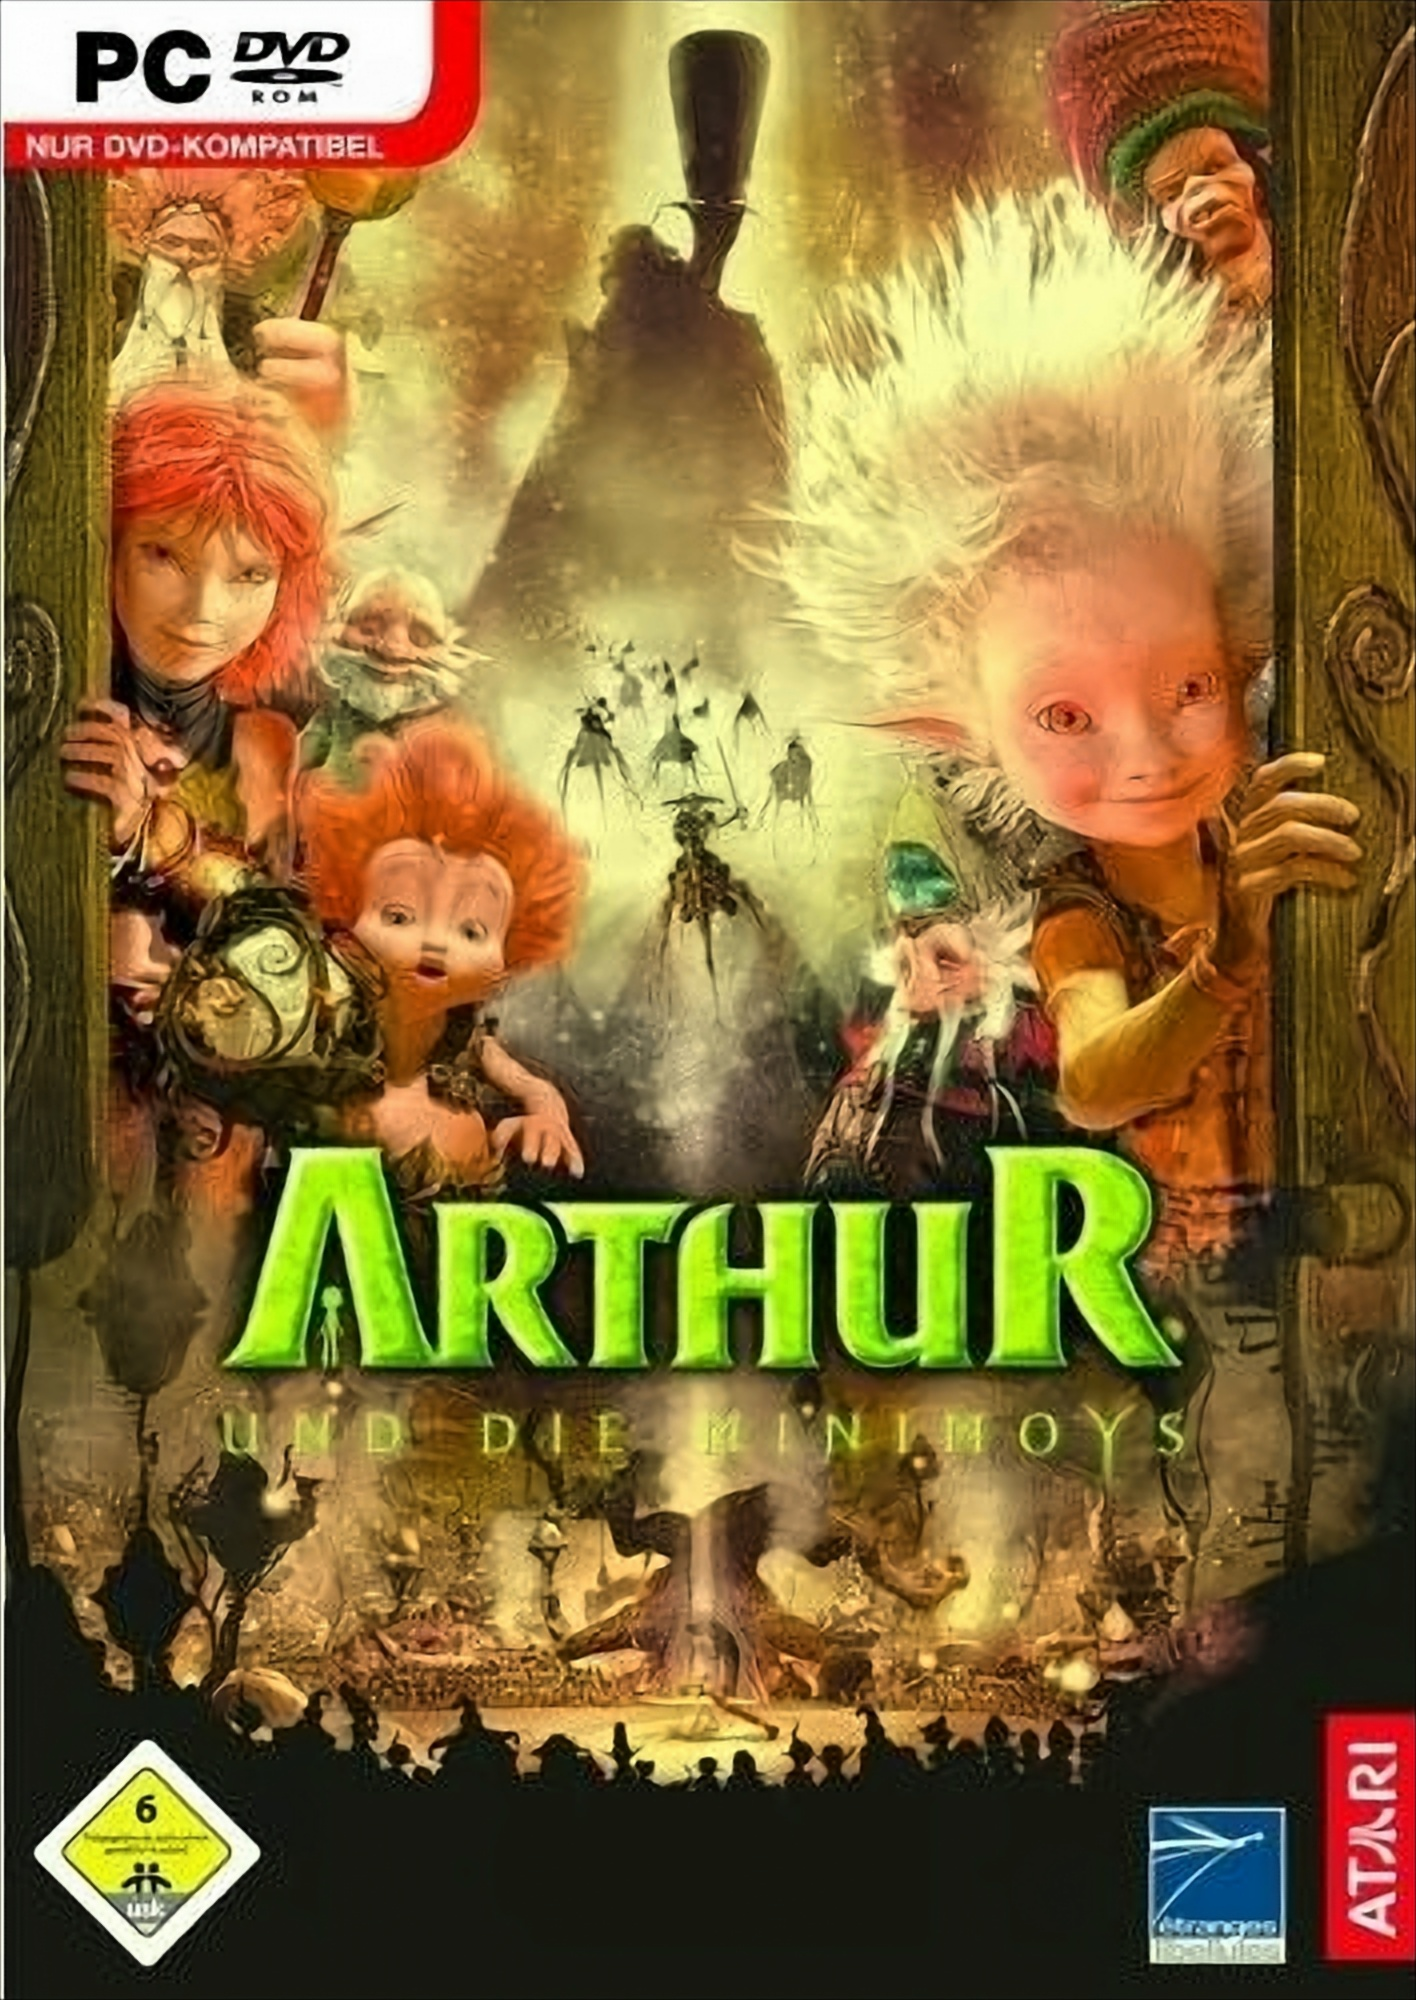 und Arthur - Minimoys die [PC]